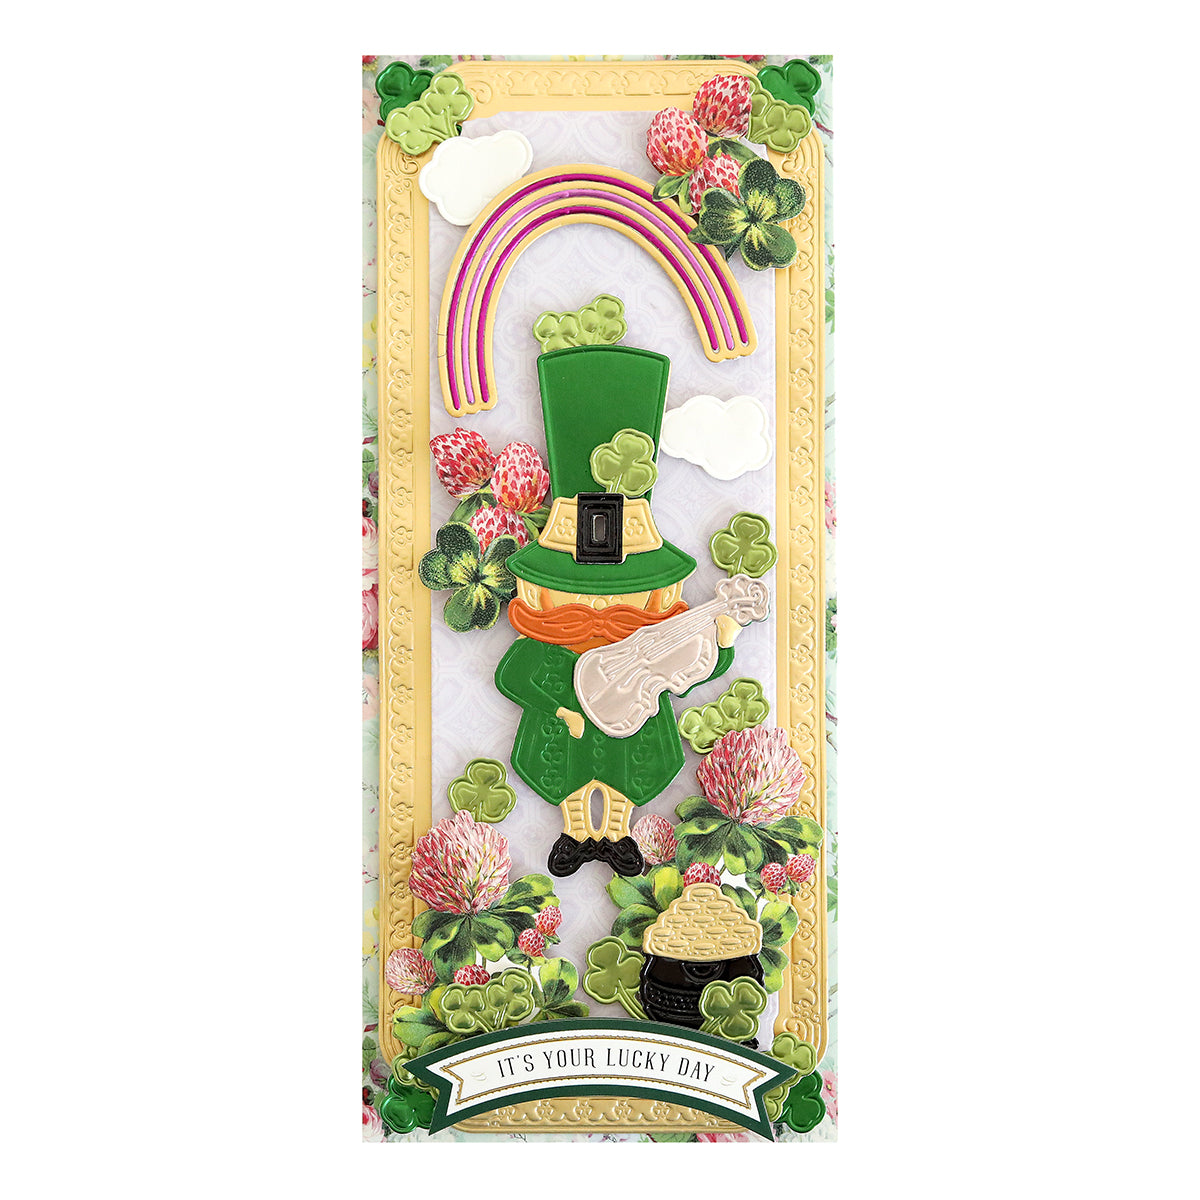 A St. Patrick's Day card featuring a Slimline Leprechaun Die.